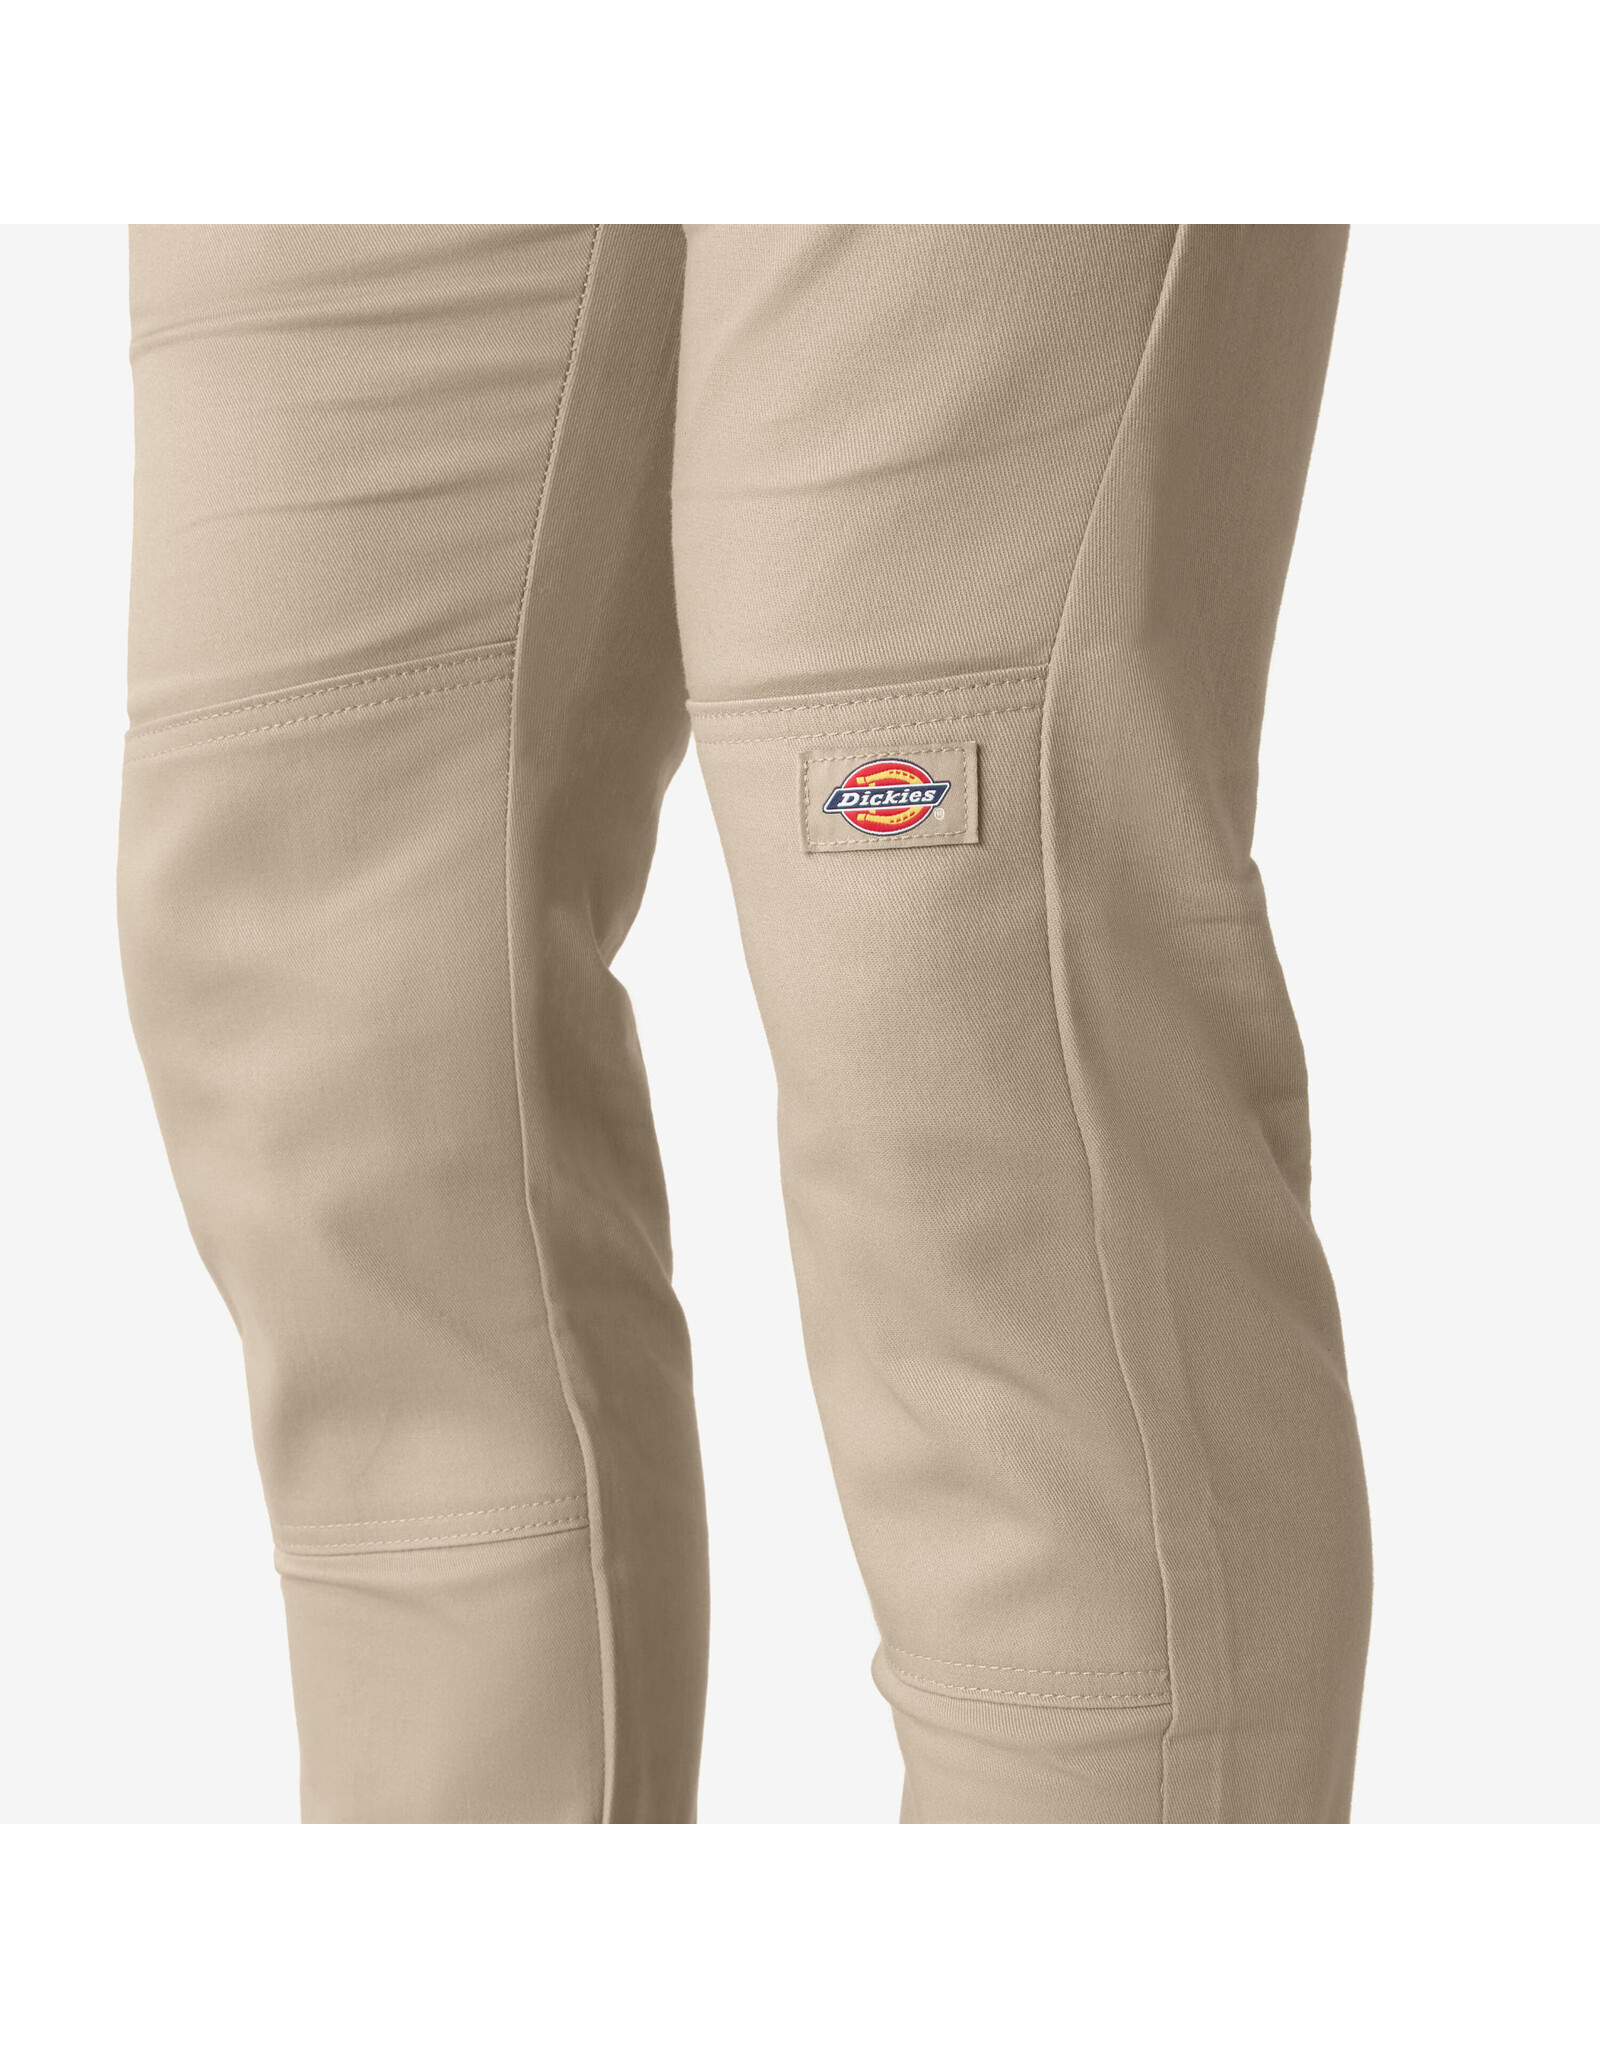 DICKIES Skinny Fit Double Knee Work Pants Desert Sand - WP811DS